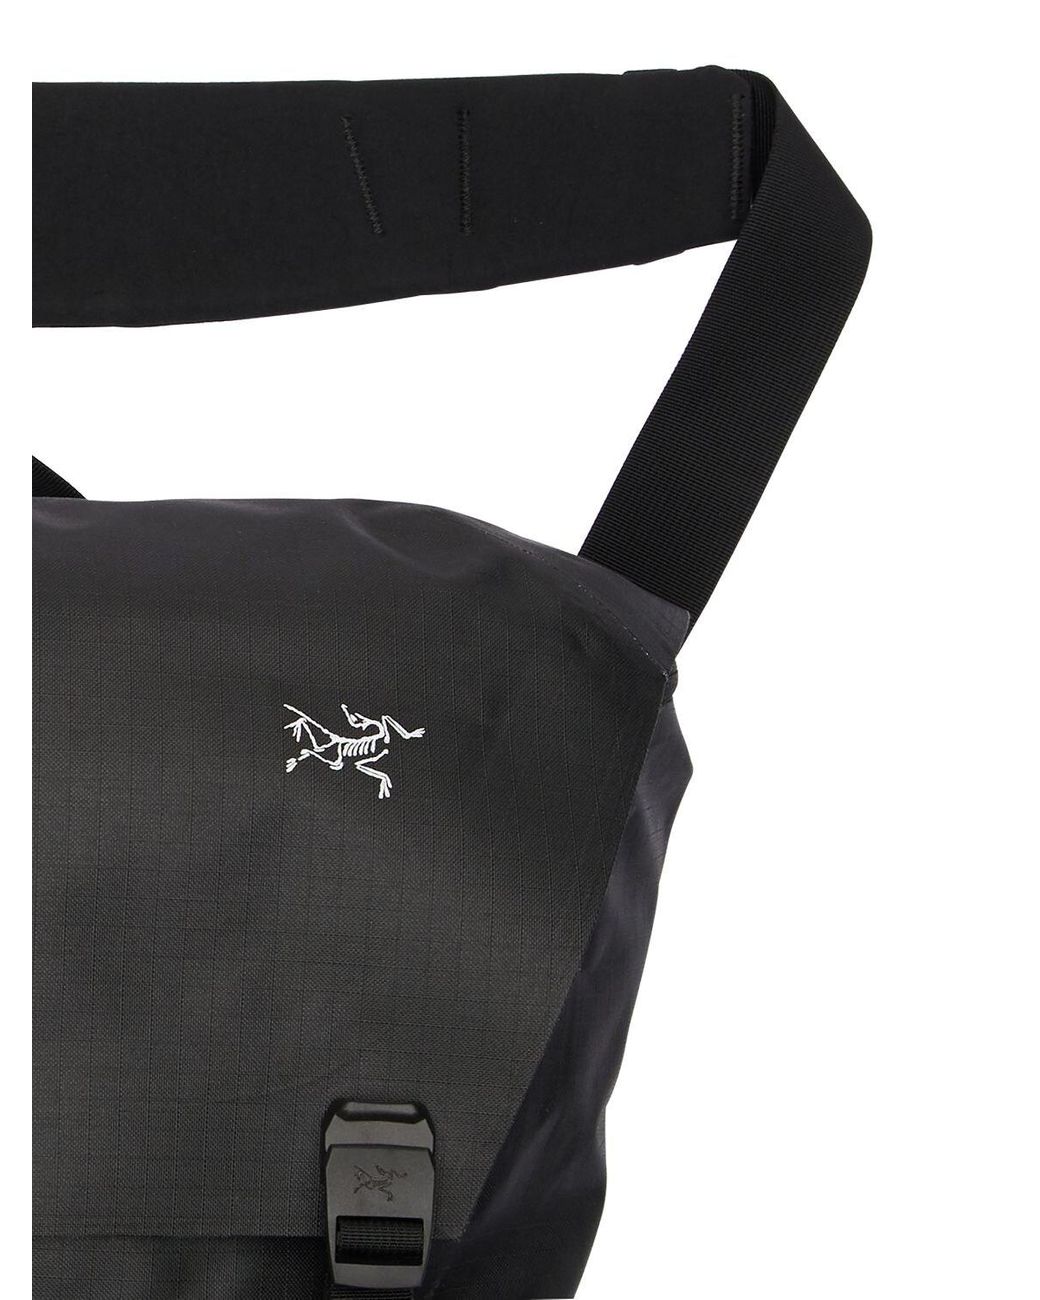 Arc'teryx 10l Granville Courier Bag in Black for Men | Lyst